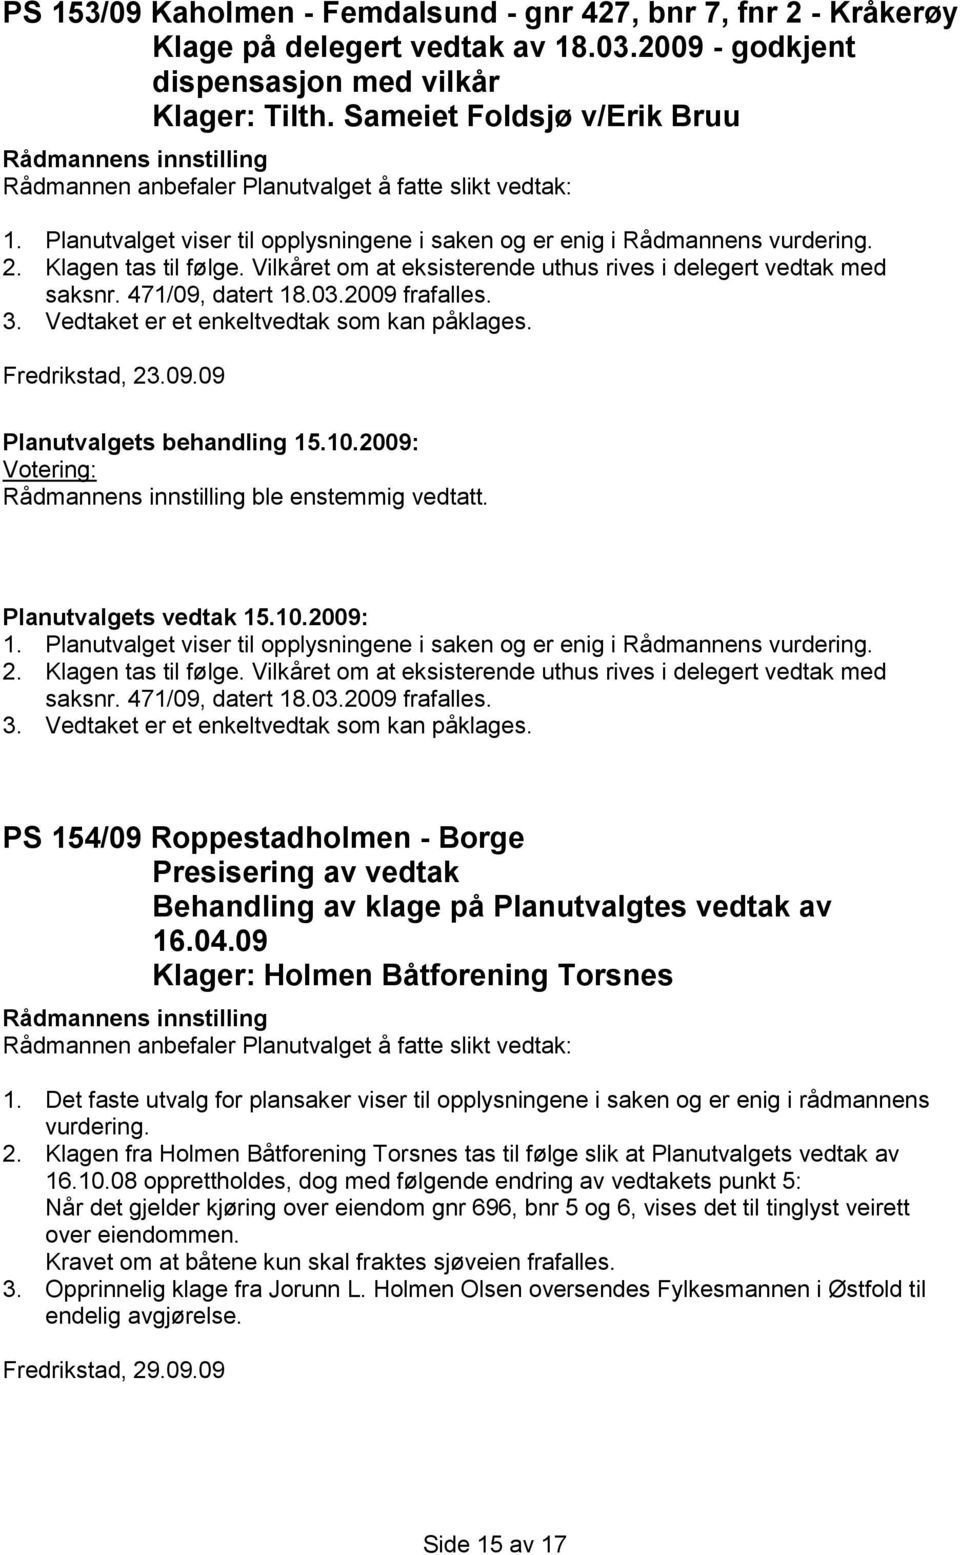 2009 frafalles. 3. Vedtaket er et enkeltvedtak som kan påklages. Fredrikstad, 23.09.09 ble enstemmig vedtatt. 1. 2009 frafalles. 3. Vedtaket er et enkeltvedtak som kan påklages. PS 154/09 Roppestadholmen - Borge Presisering av vedtak Behandling av klage på Planutvalgtes vedtak av 16.